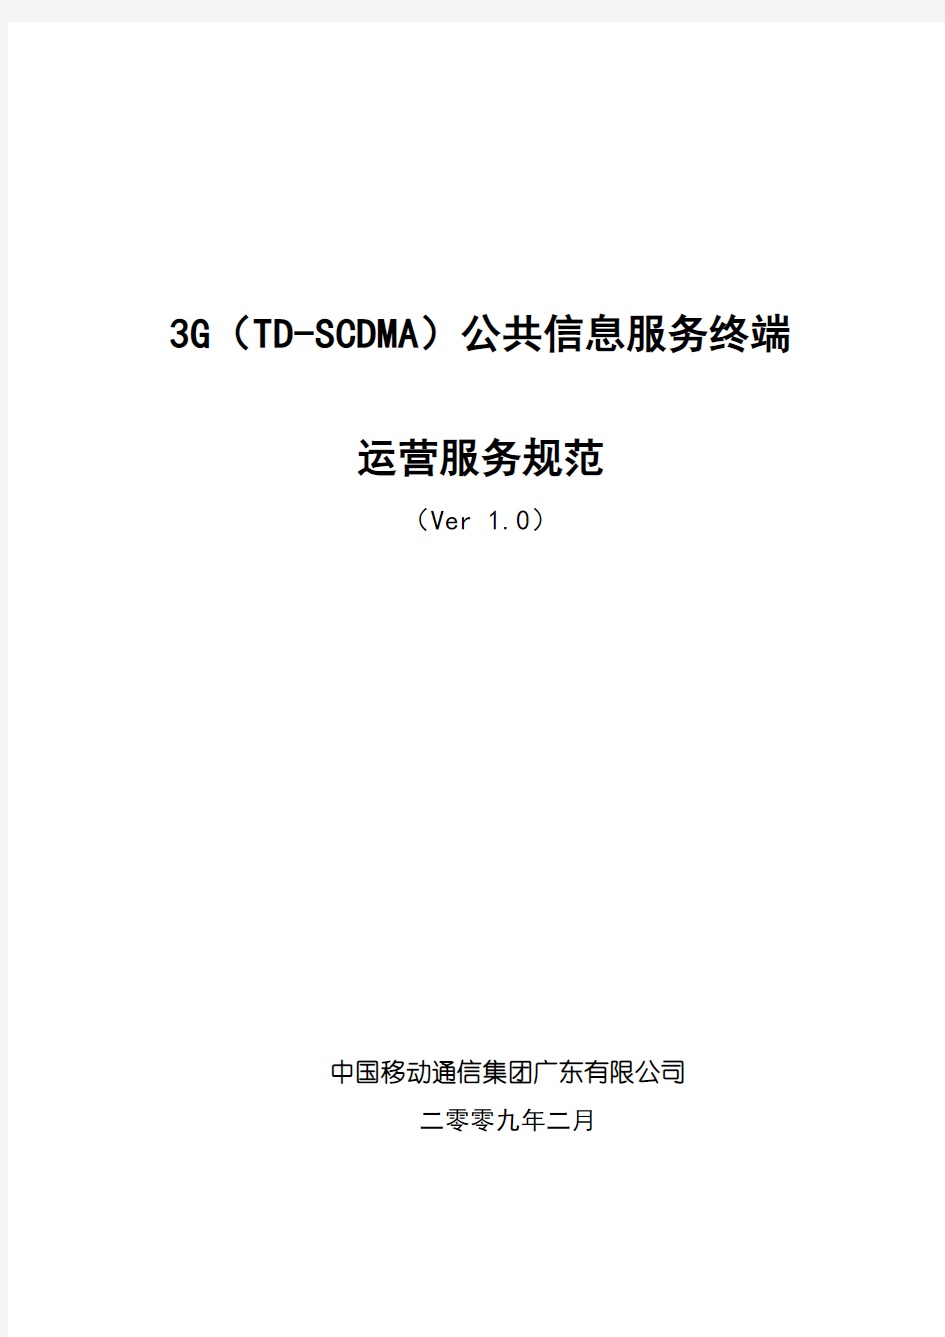 广东移动深圳分公司3G(TD-SCDMA)公共信息化服务点项目运营服务规范